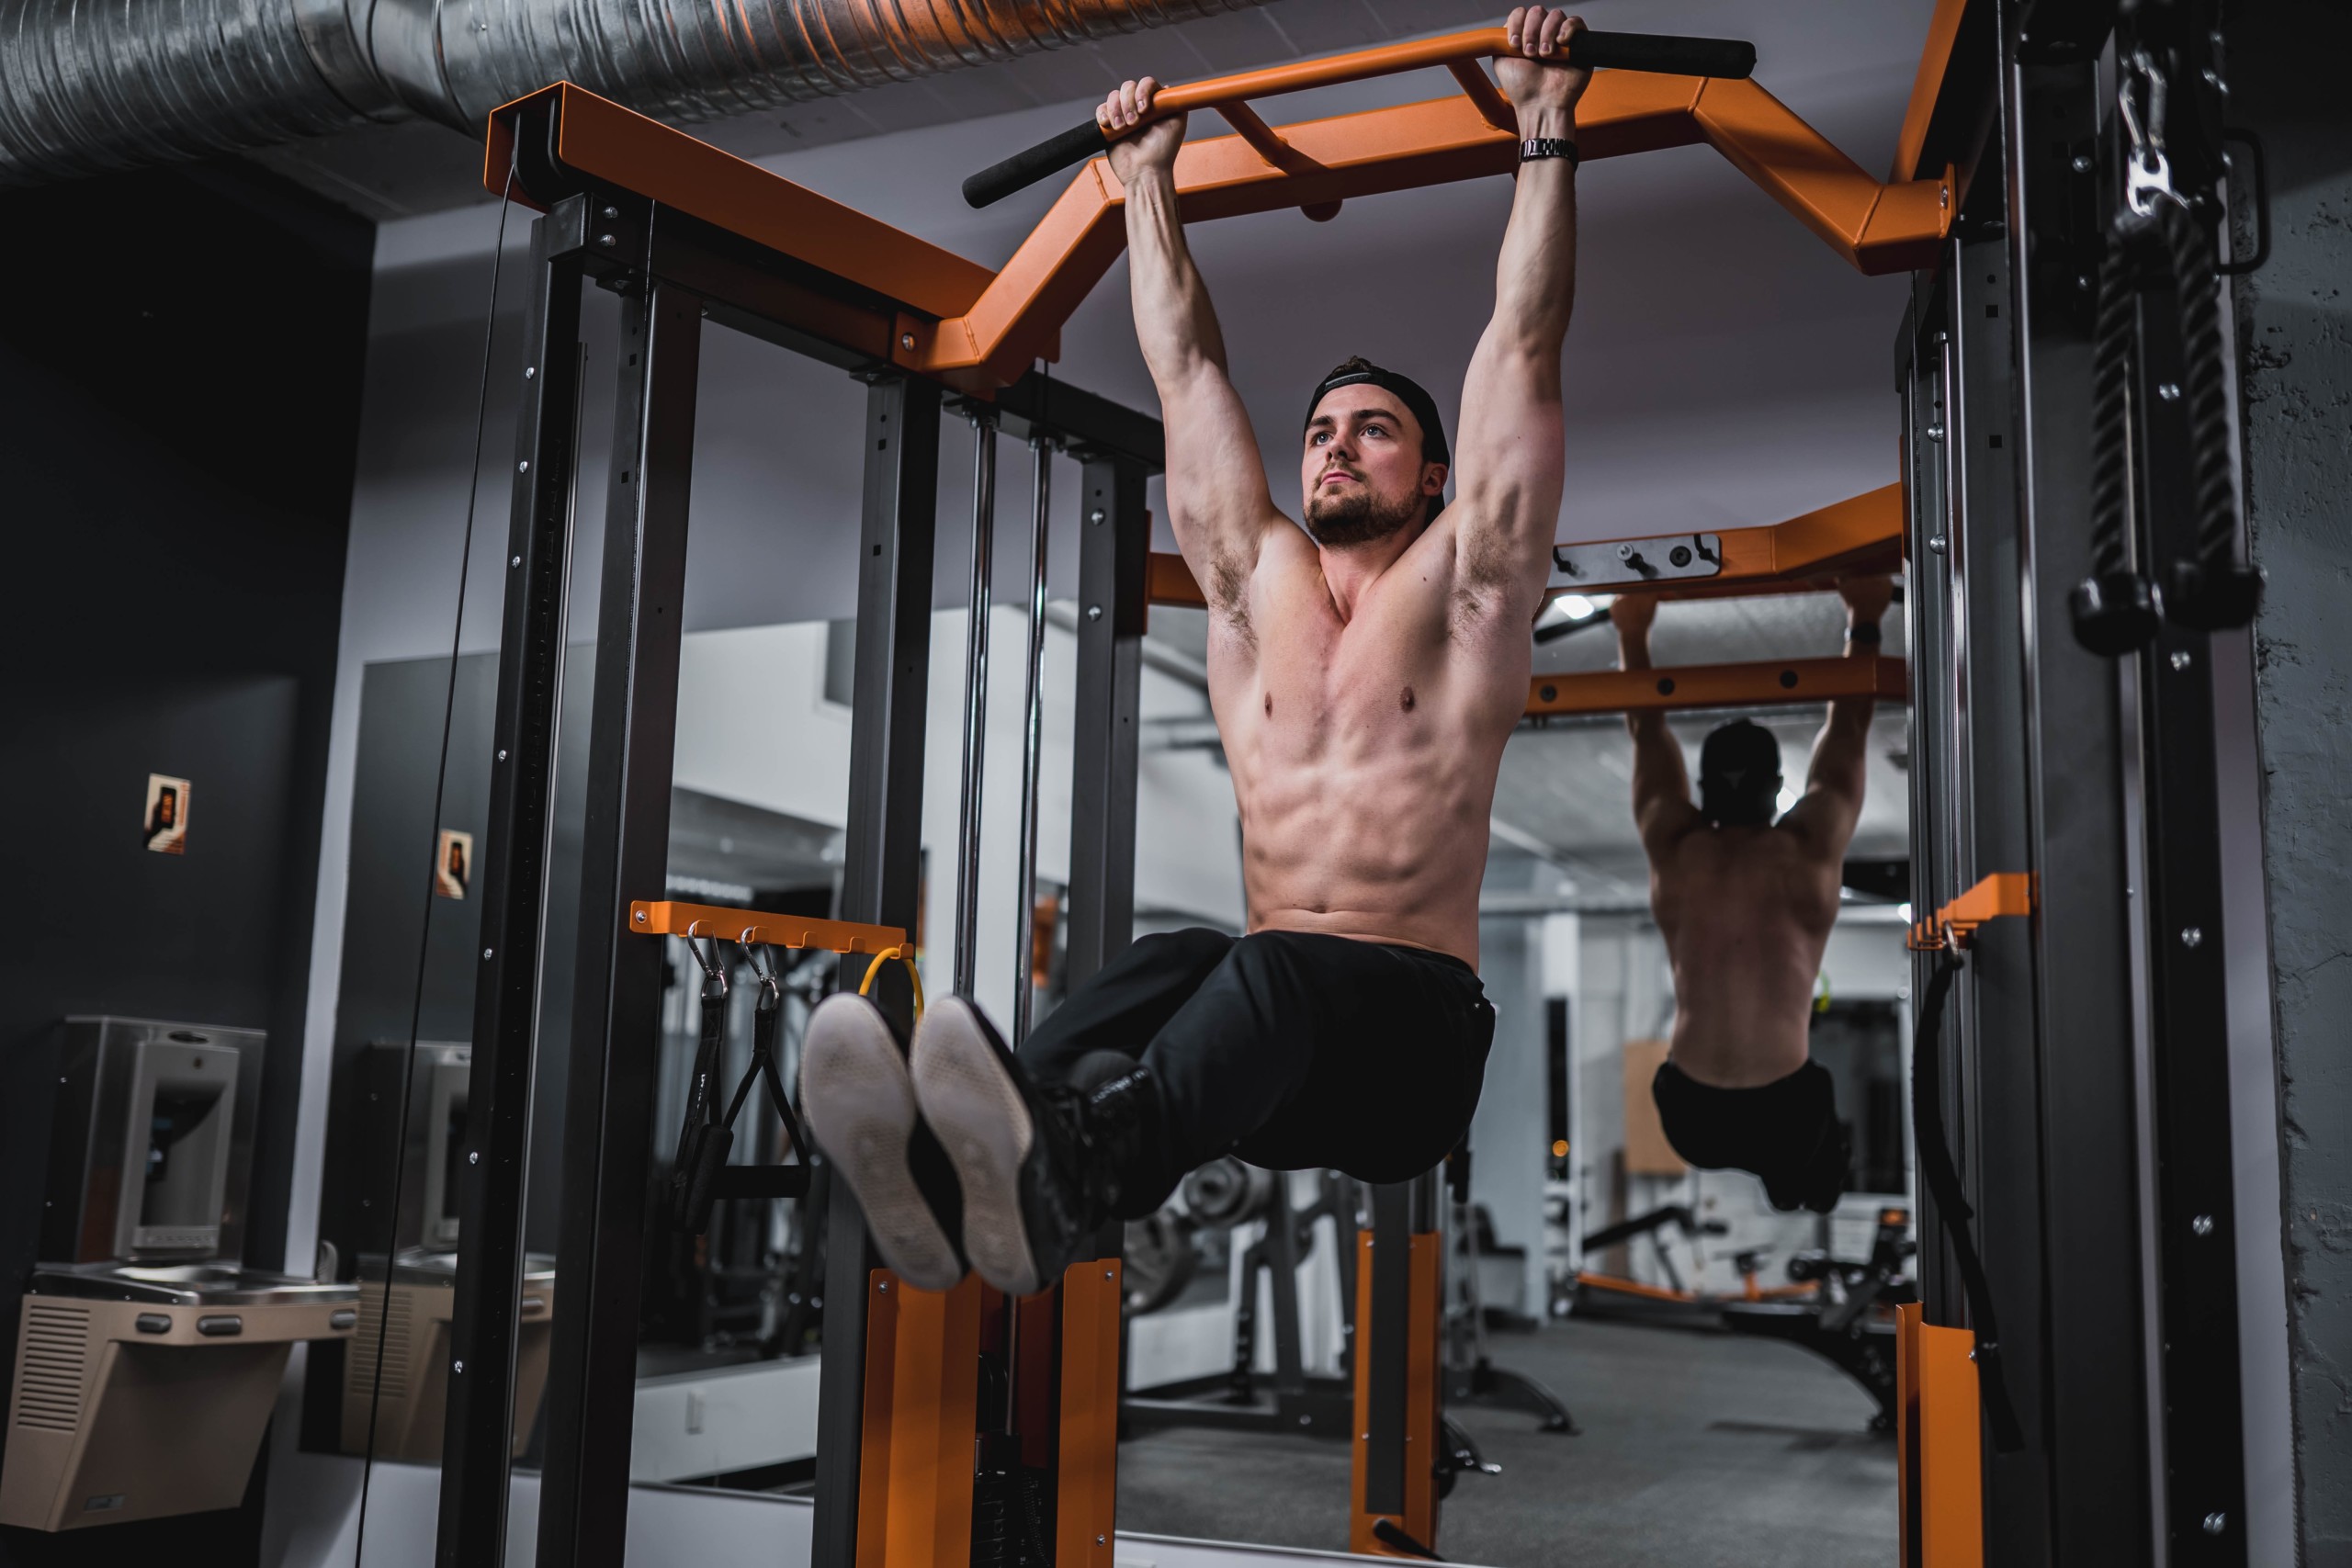 効果的に 懸垂で大胸筋を効かせる3つのトレーニング方法と4つの注意点 Retio Body Design